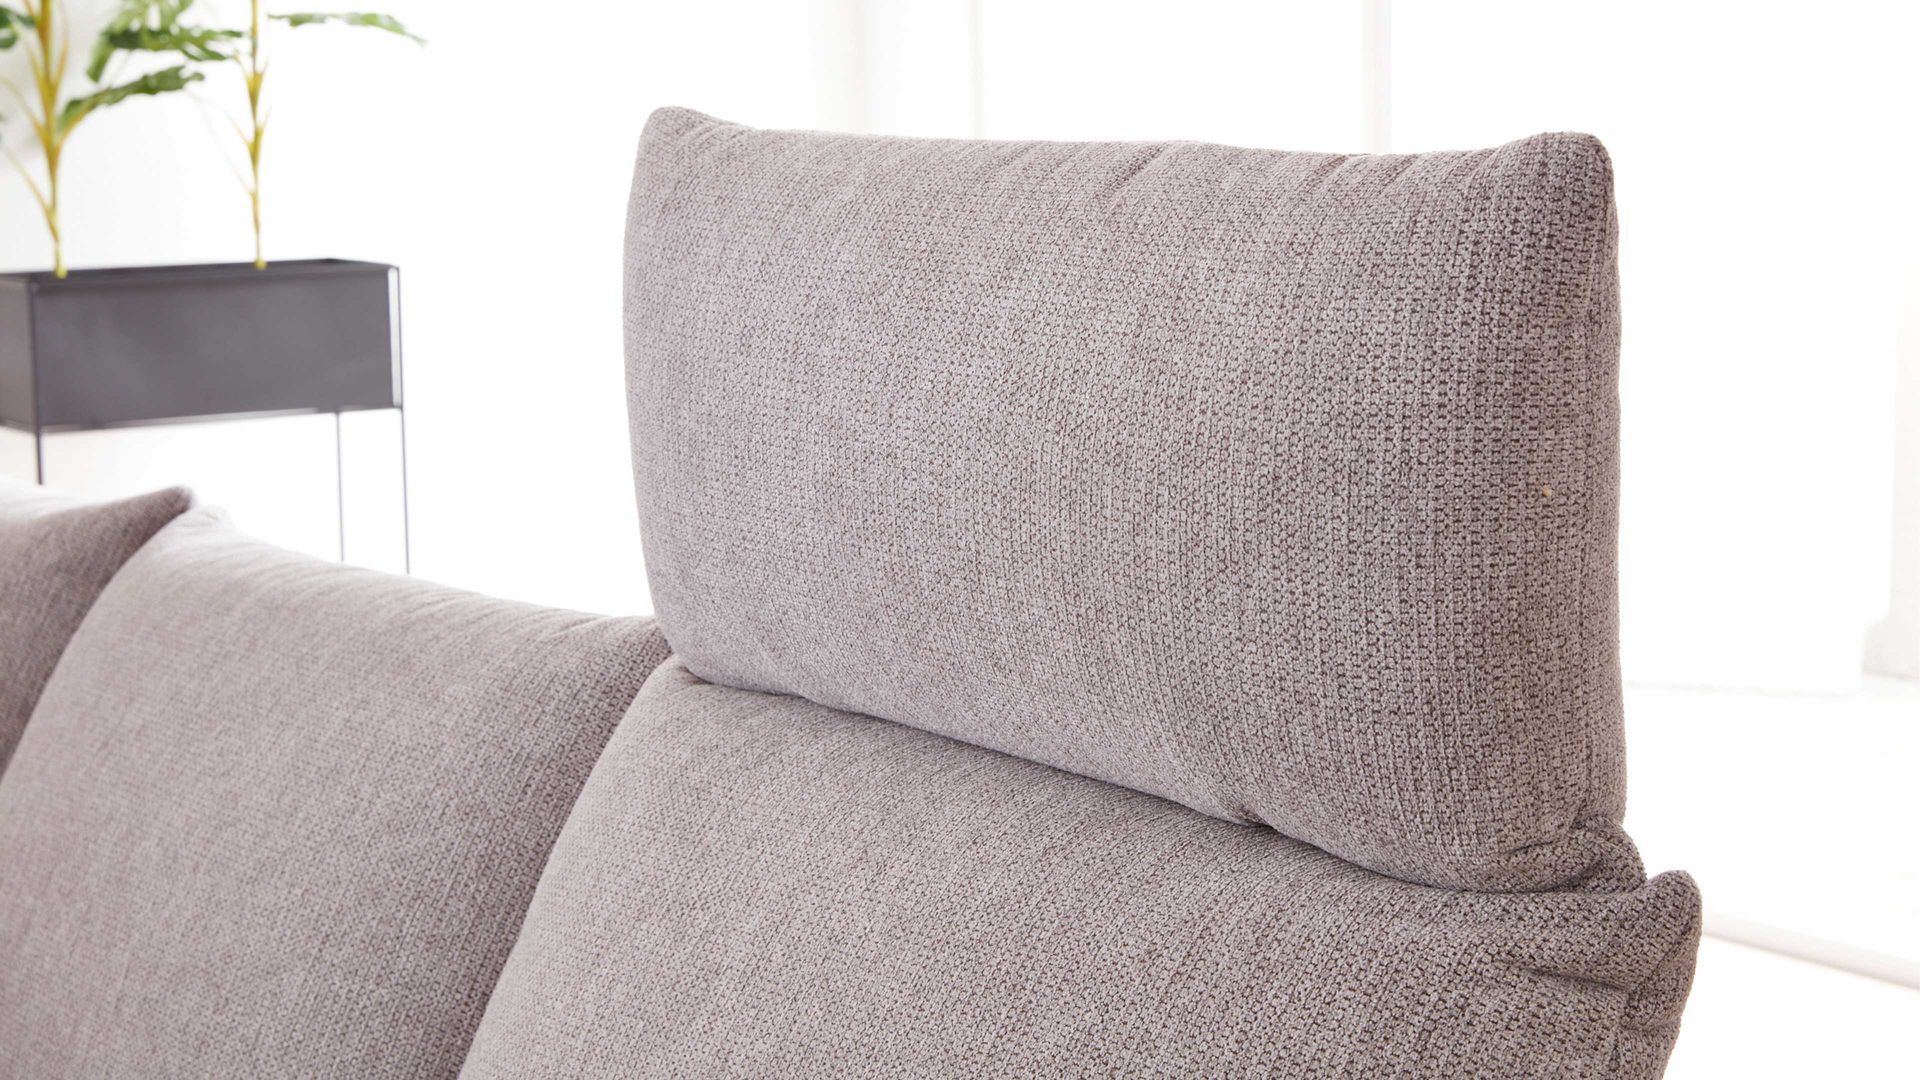 Wohnland Breitwieser , Möbel A-Z, Sofa + Couch, Interliving